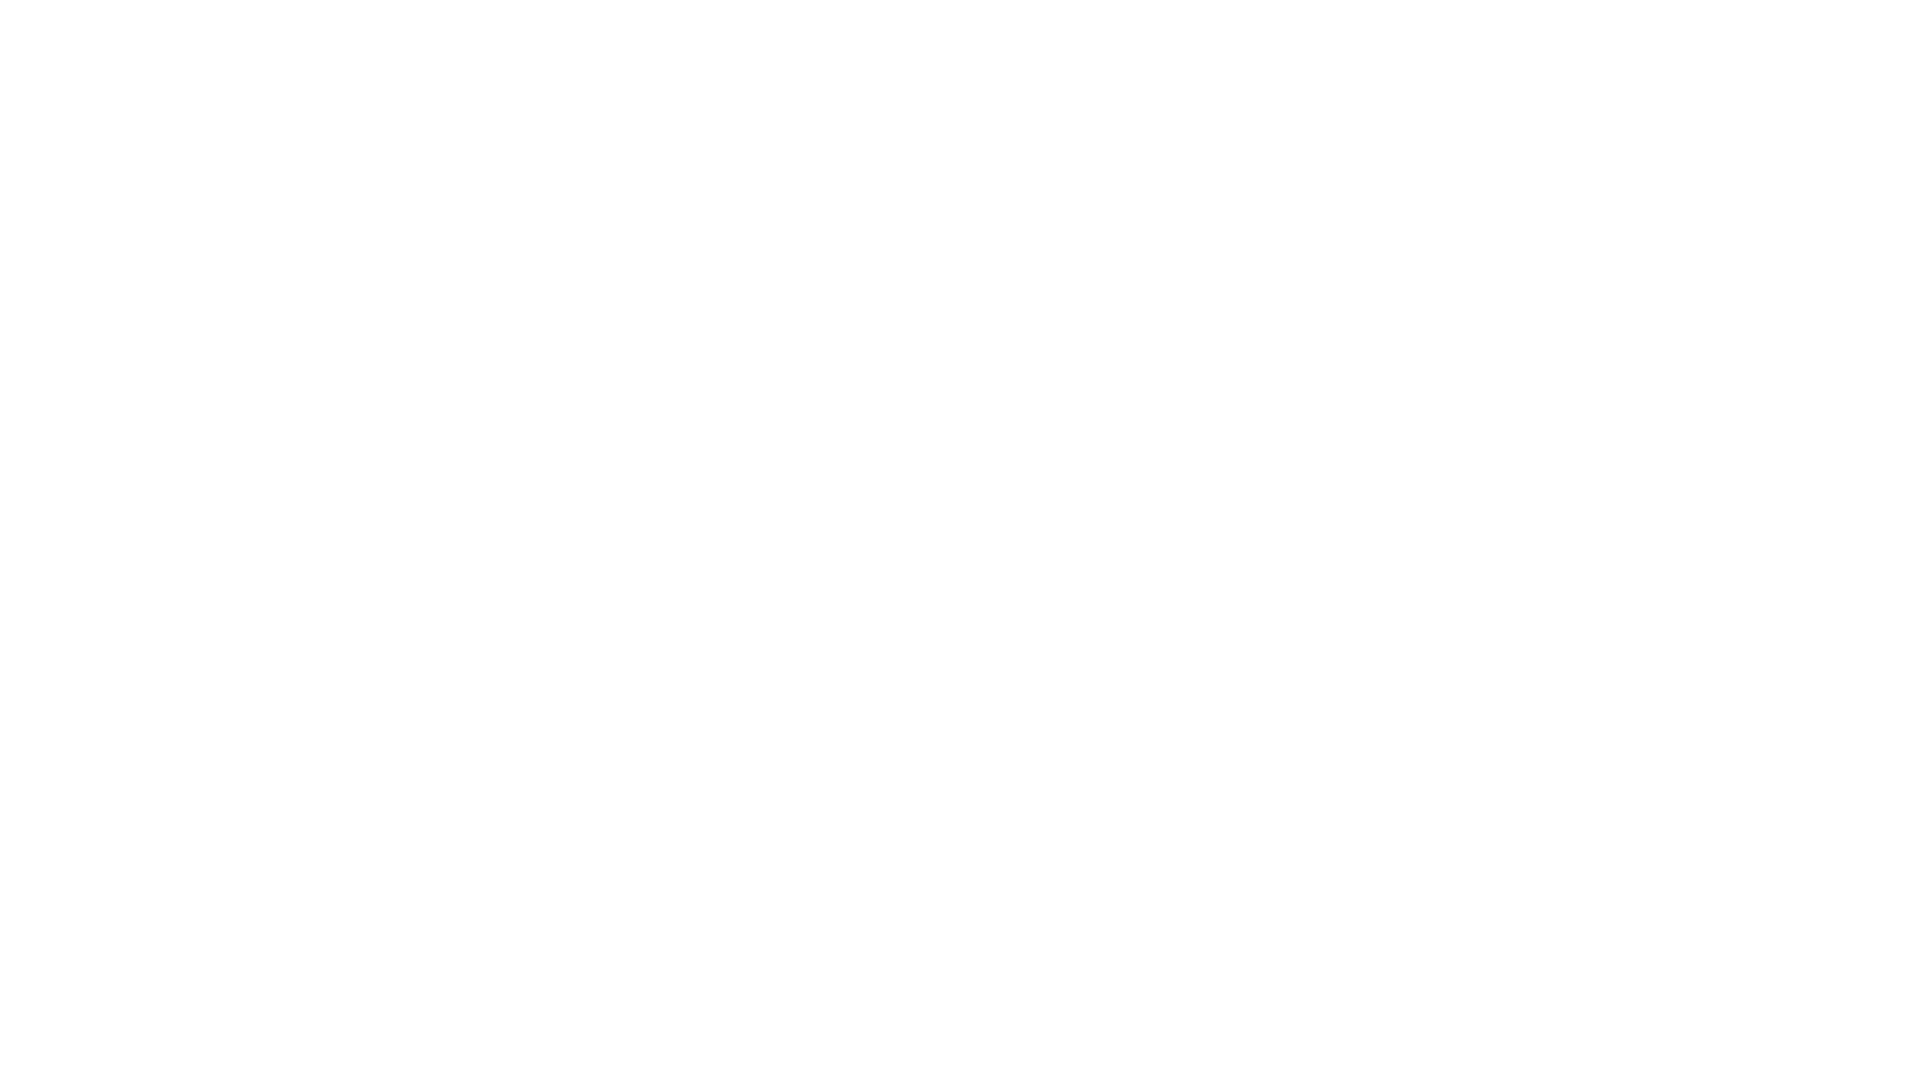 Plan de recuperación,Transformación y Resiliencia